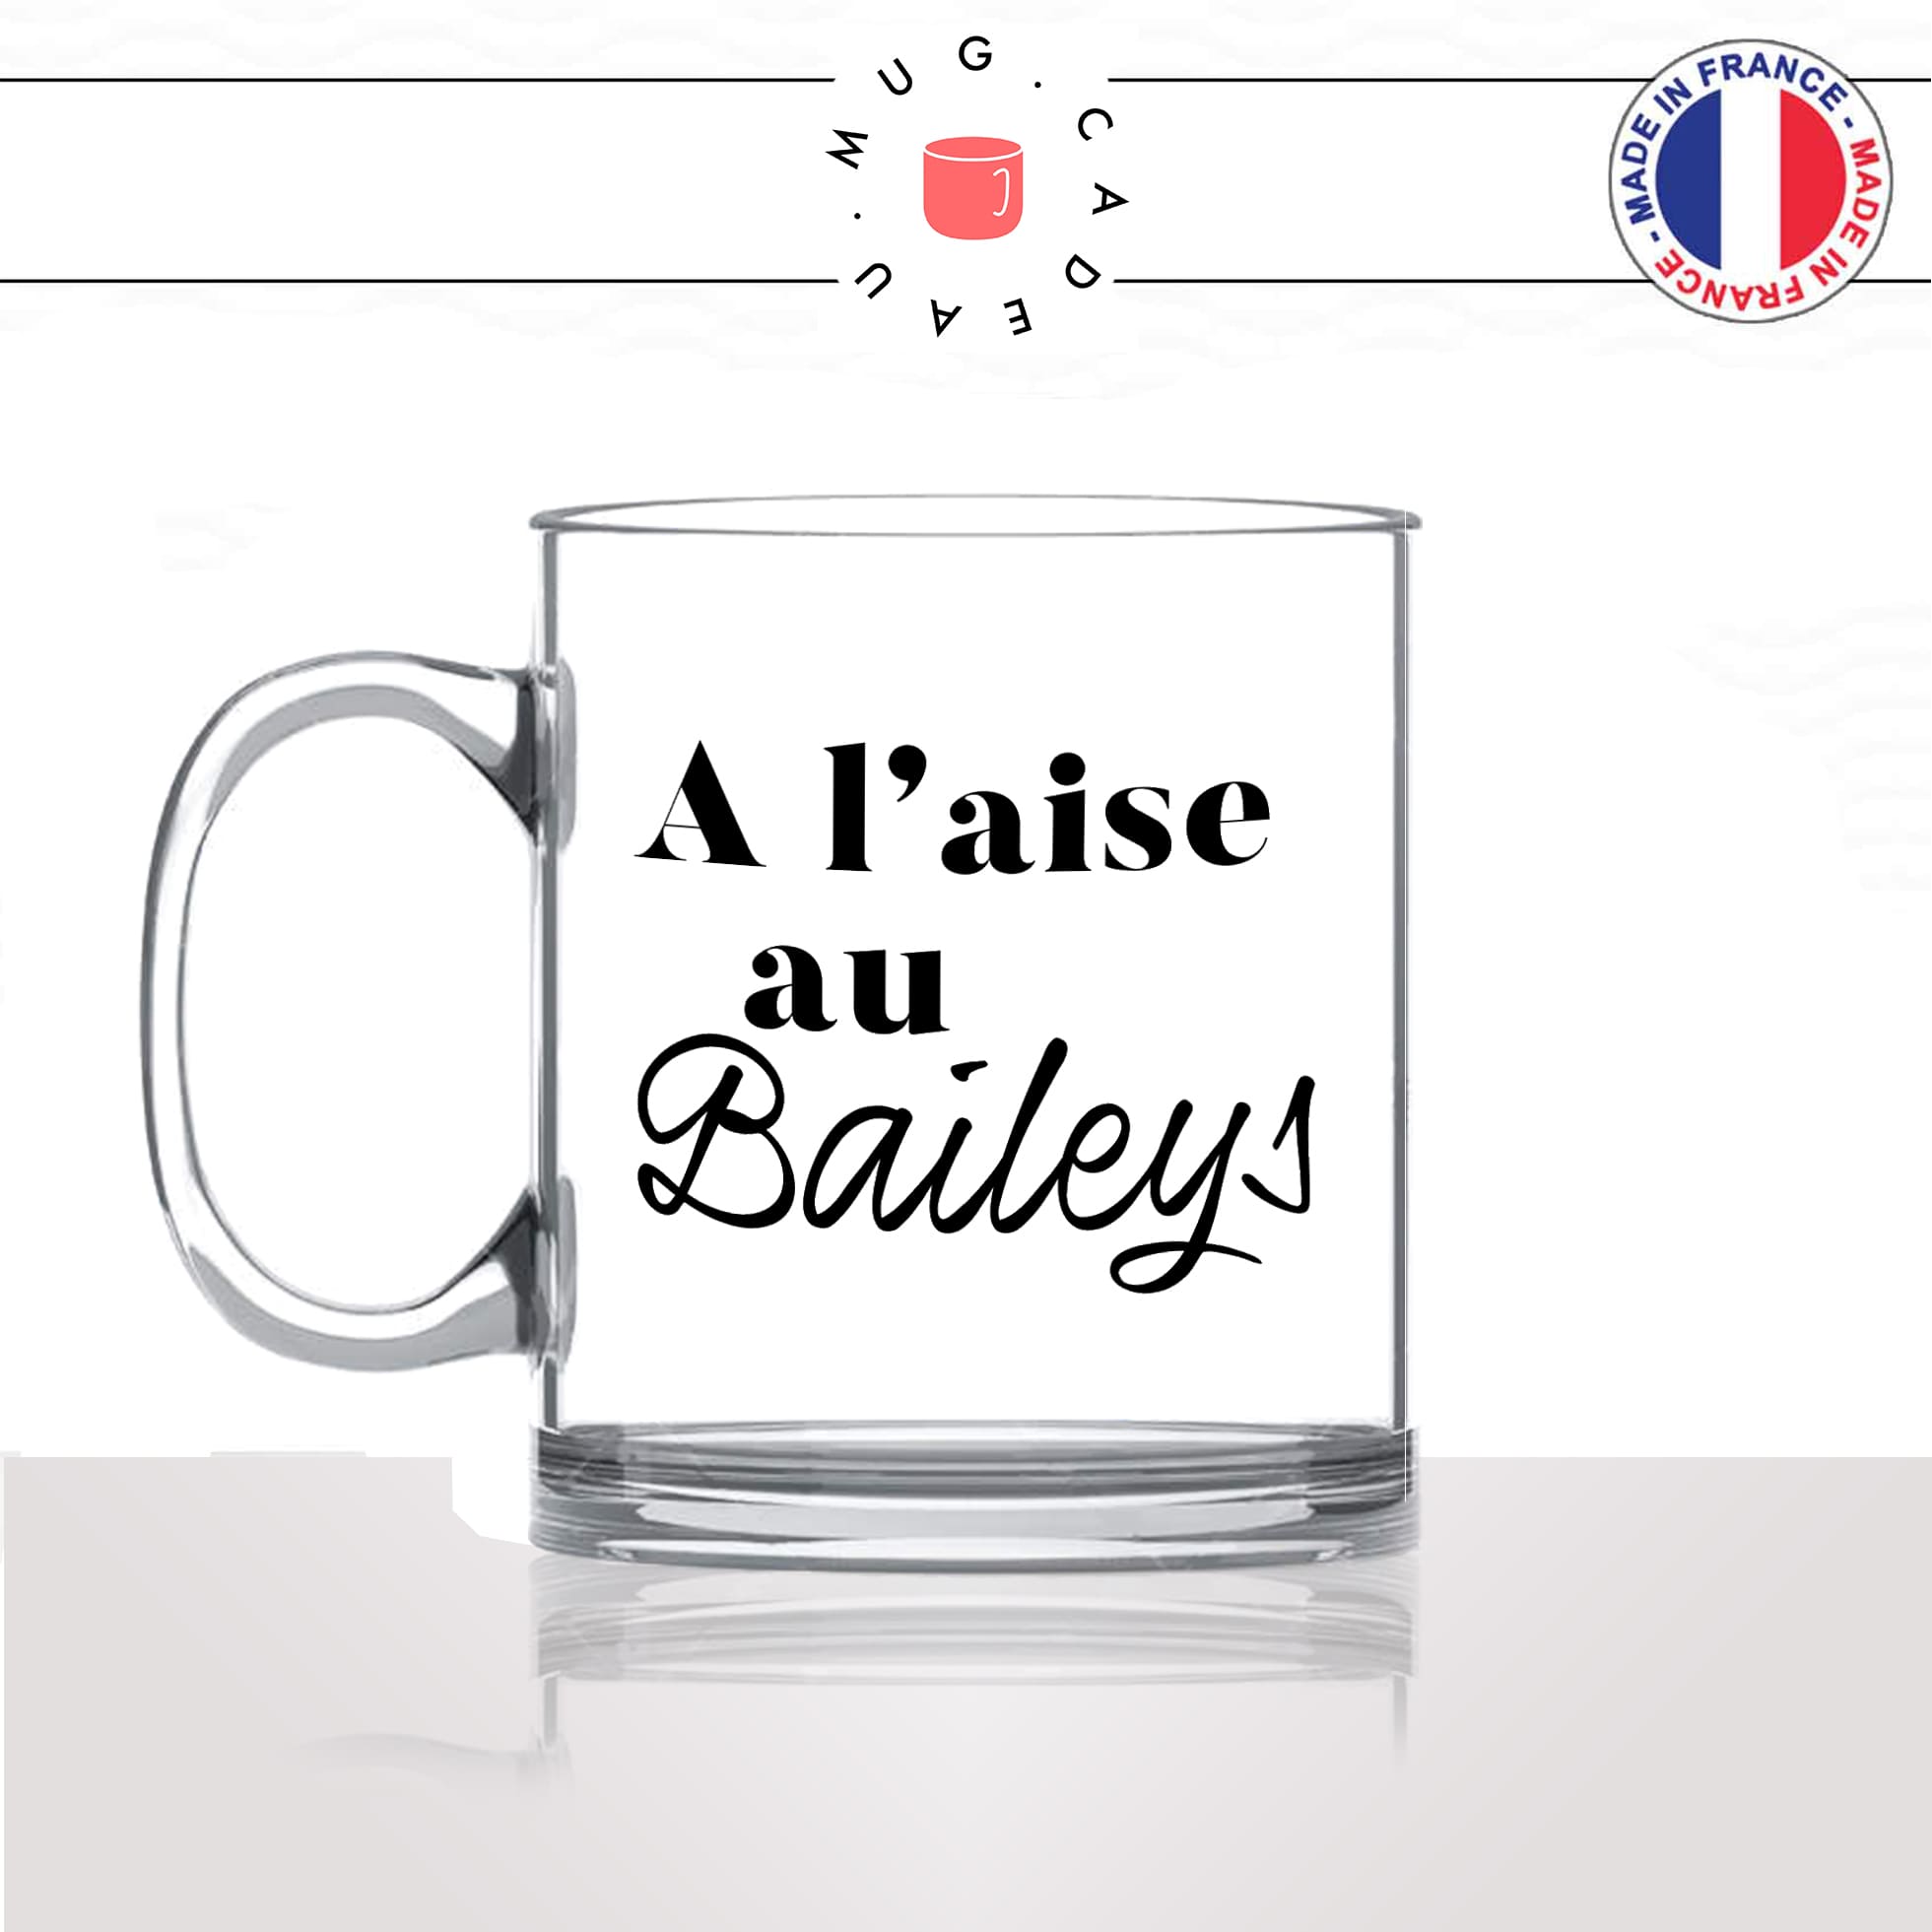 mug-tasse-en-verre-transparent-glass-unique-a-laise-au-baileys-alcool-apéro-glaçons-homme-femme-humour-fun-cool-idée-cadeau-original